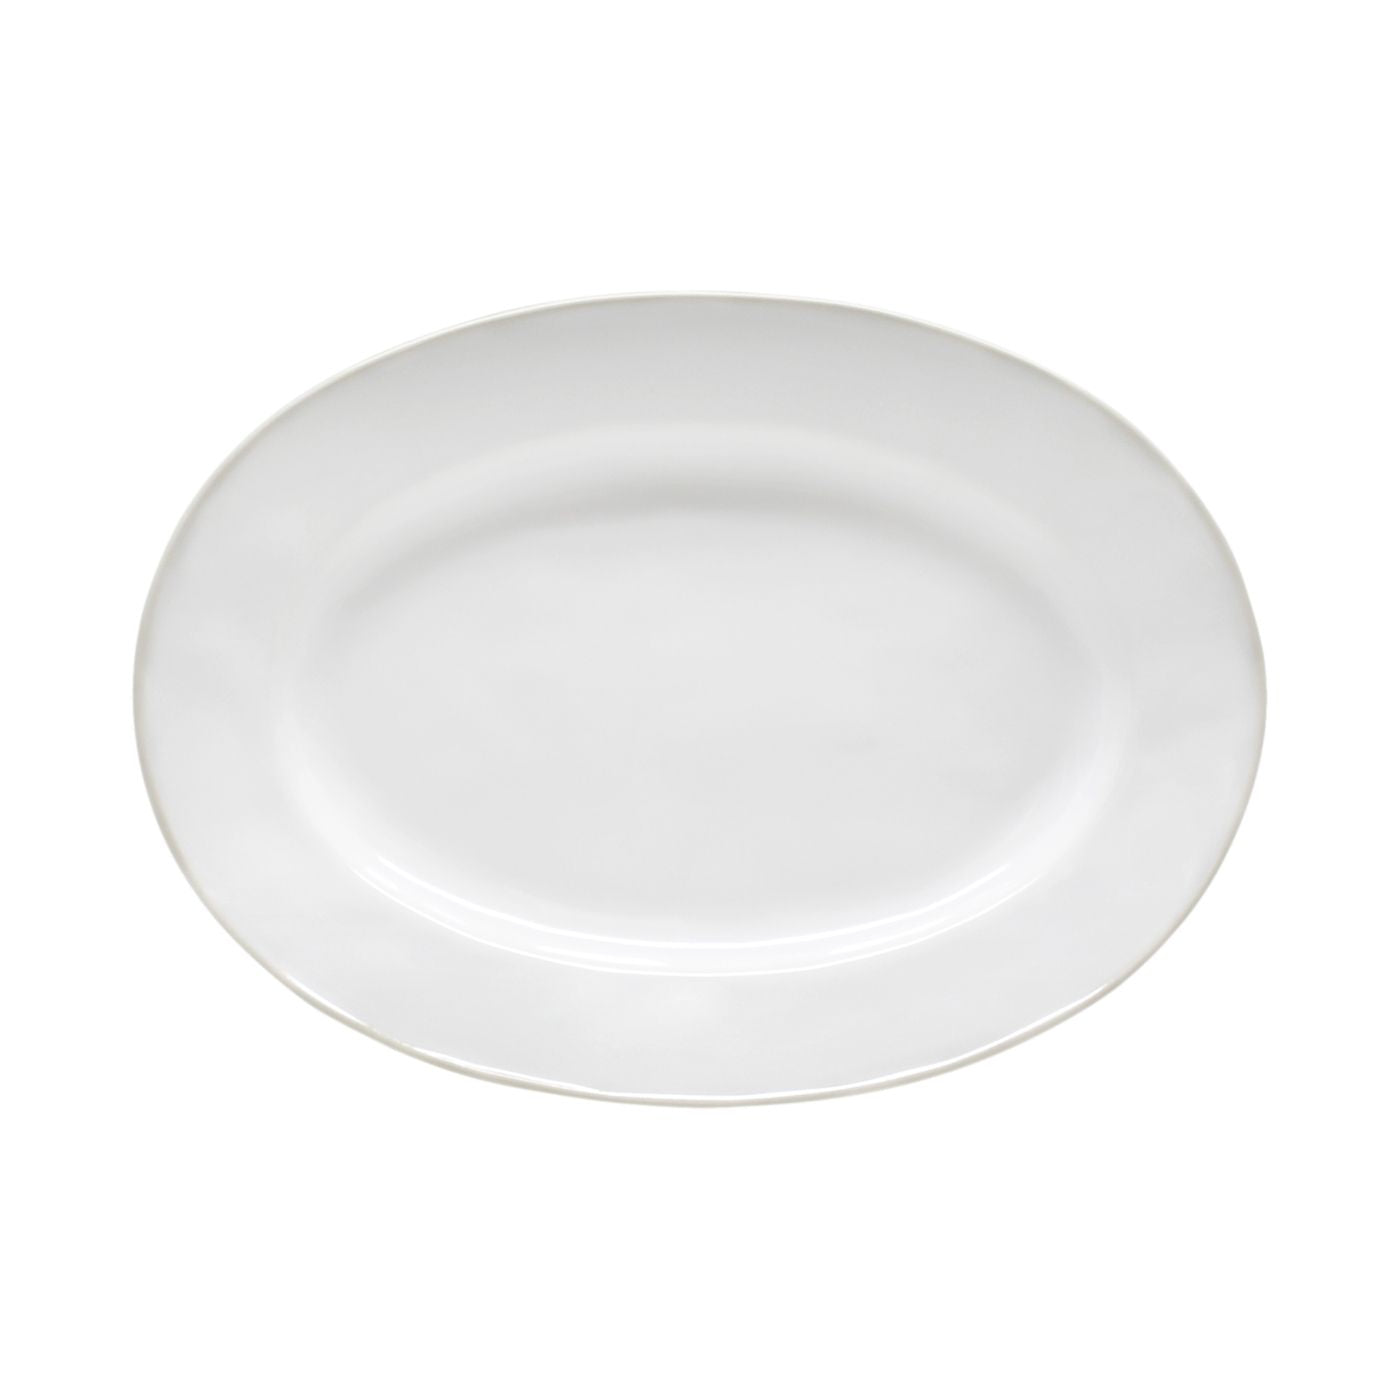 Beja Oval Platter 12" White-Cream